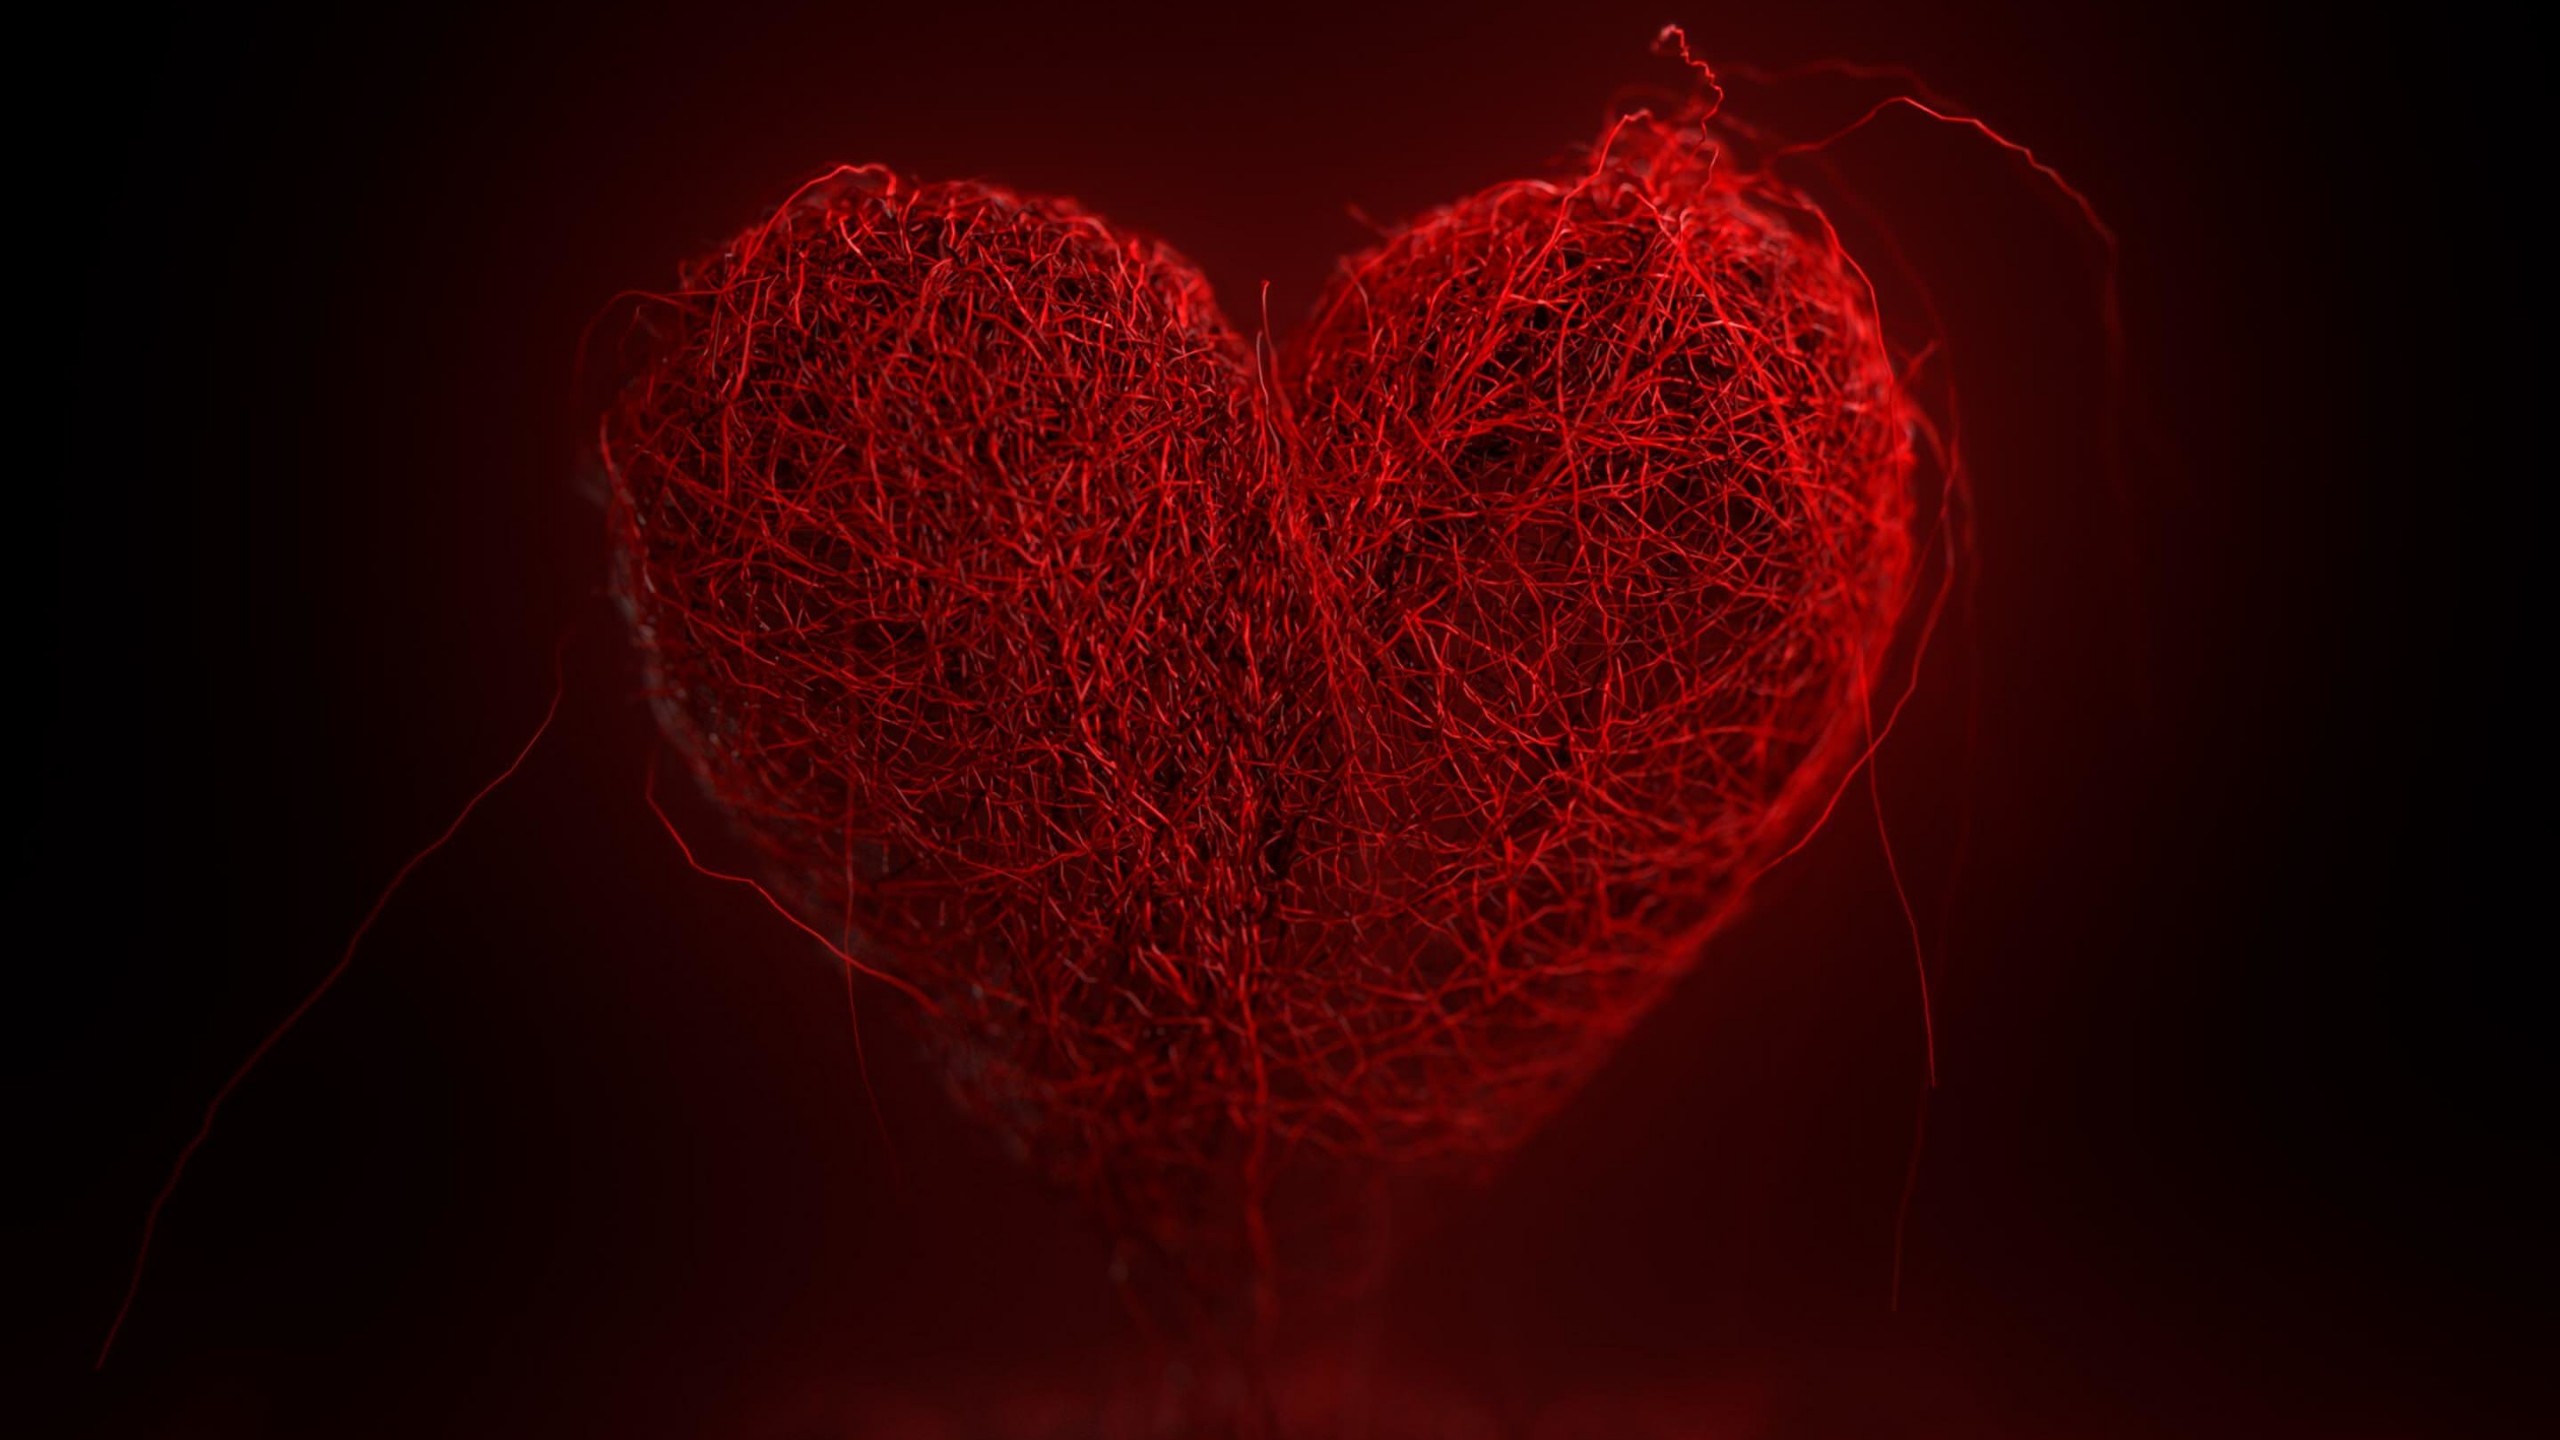 3D String Art Heart Wallpaper for Social Media YouTube Channel Art